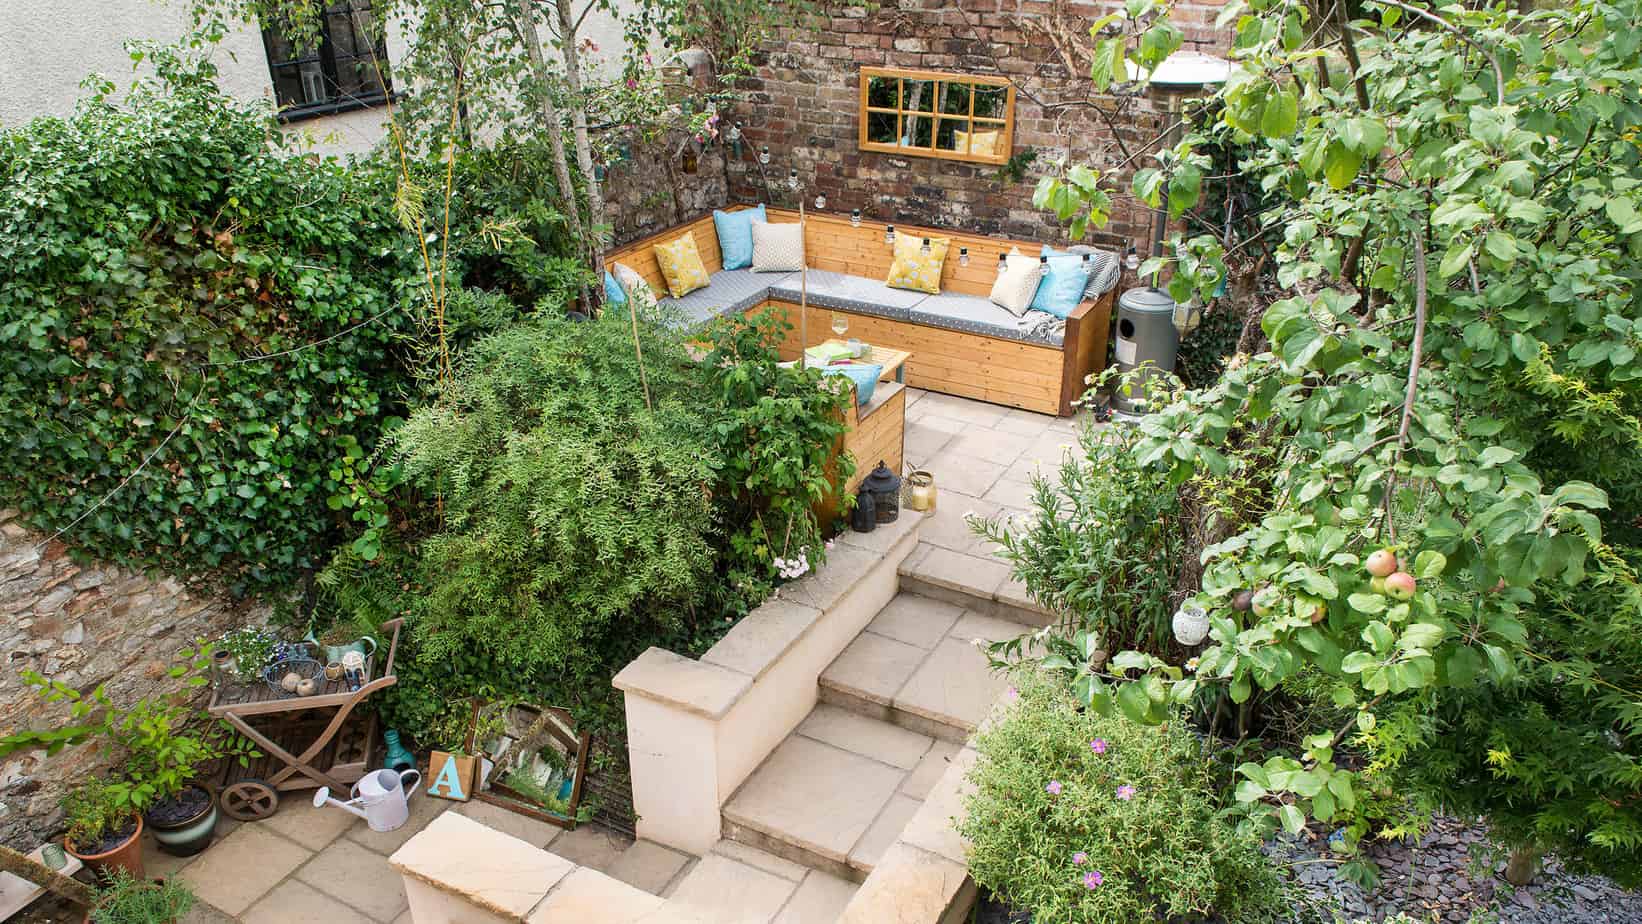 Multi-levelled secret garden hideaway